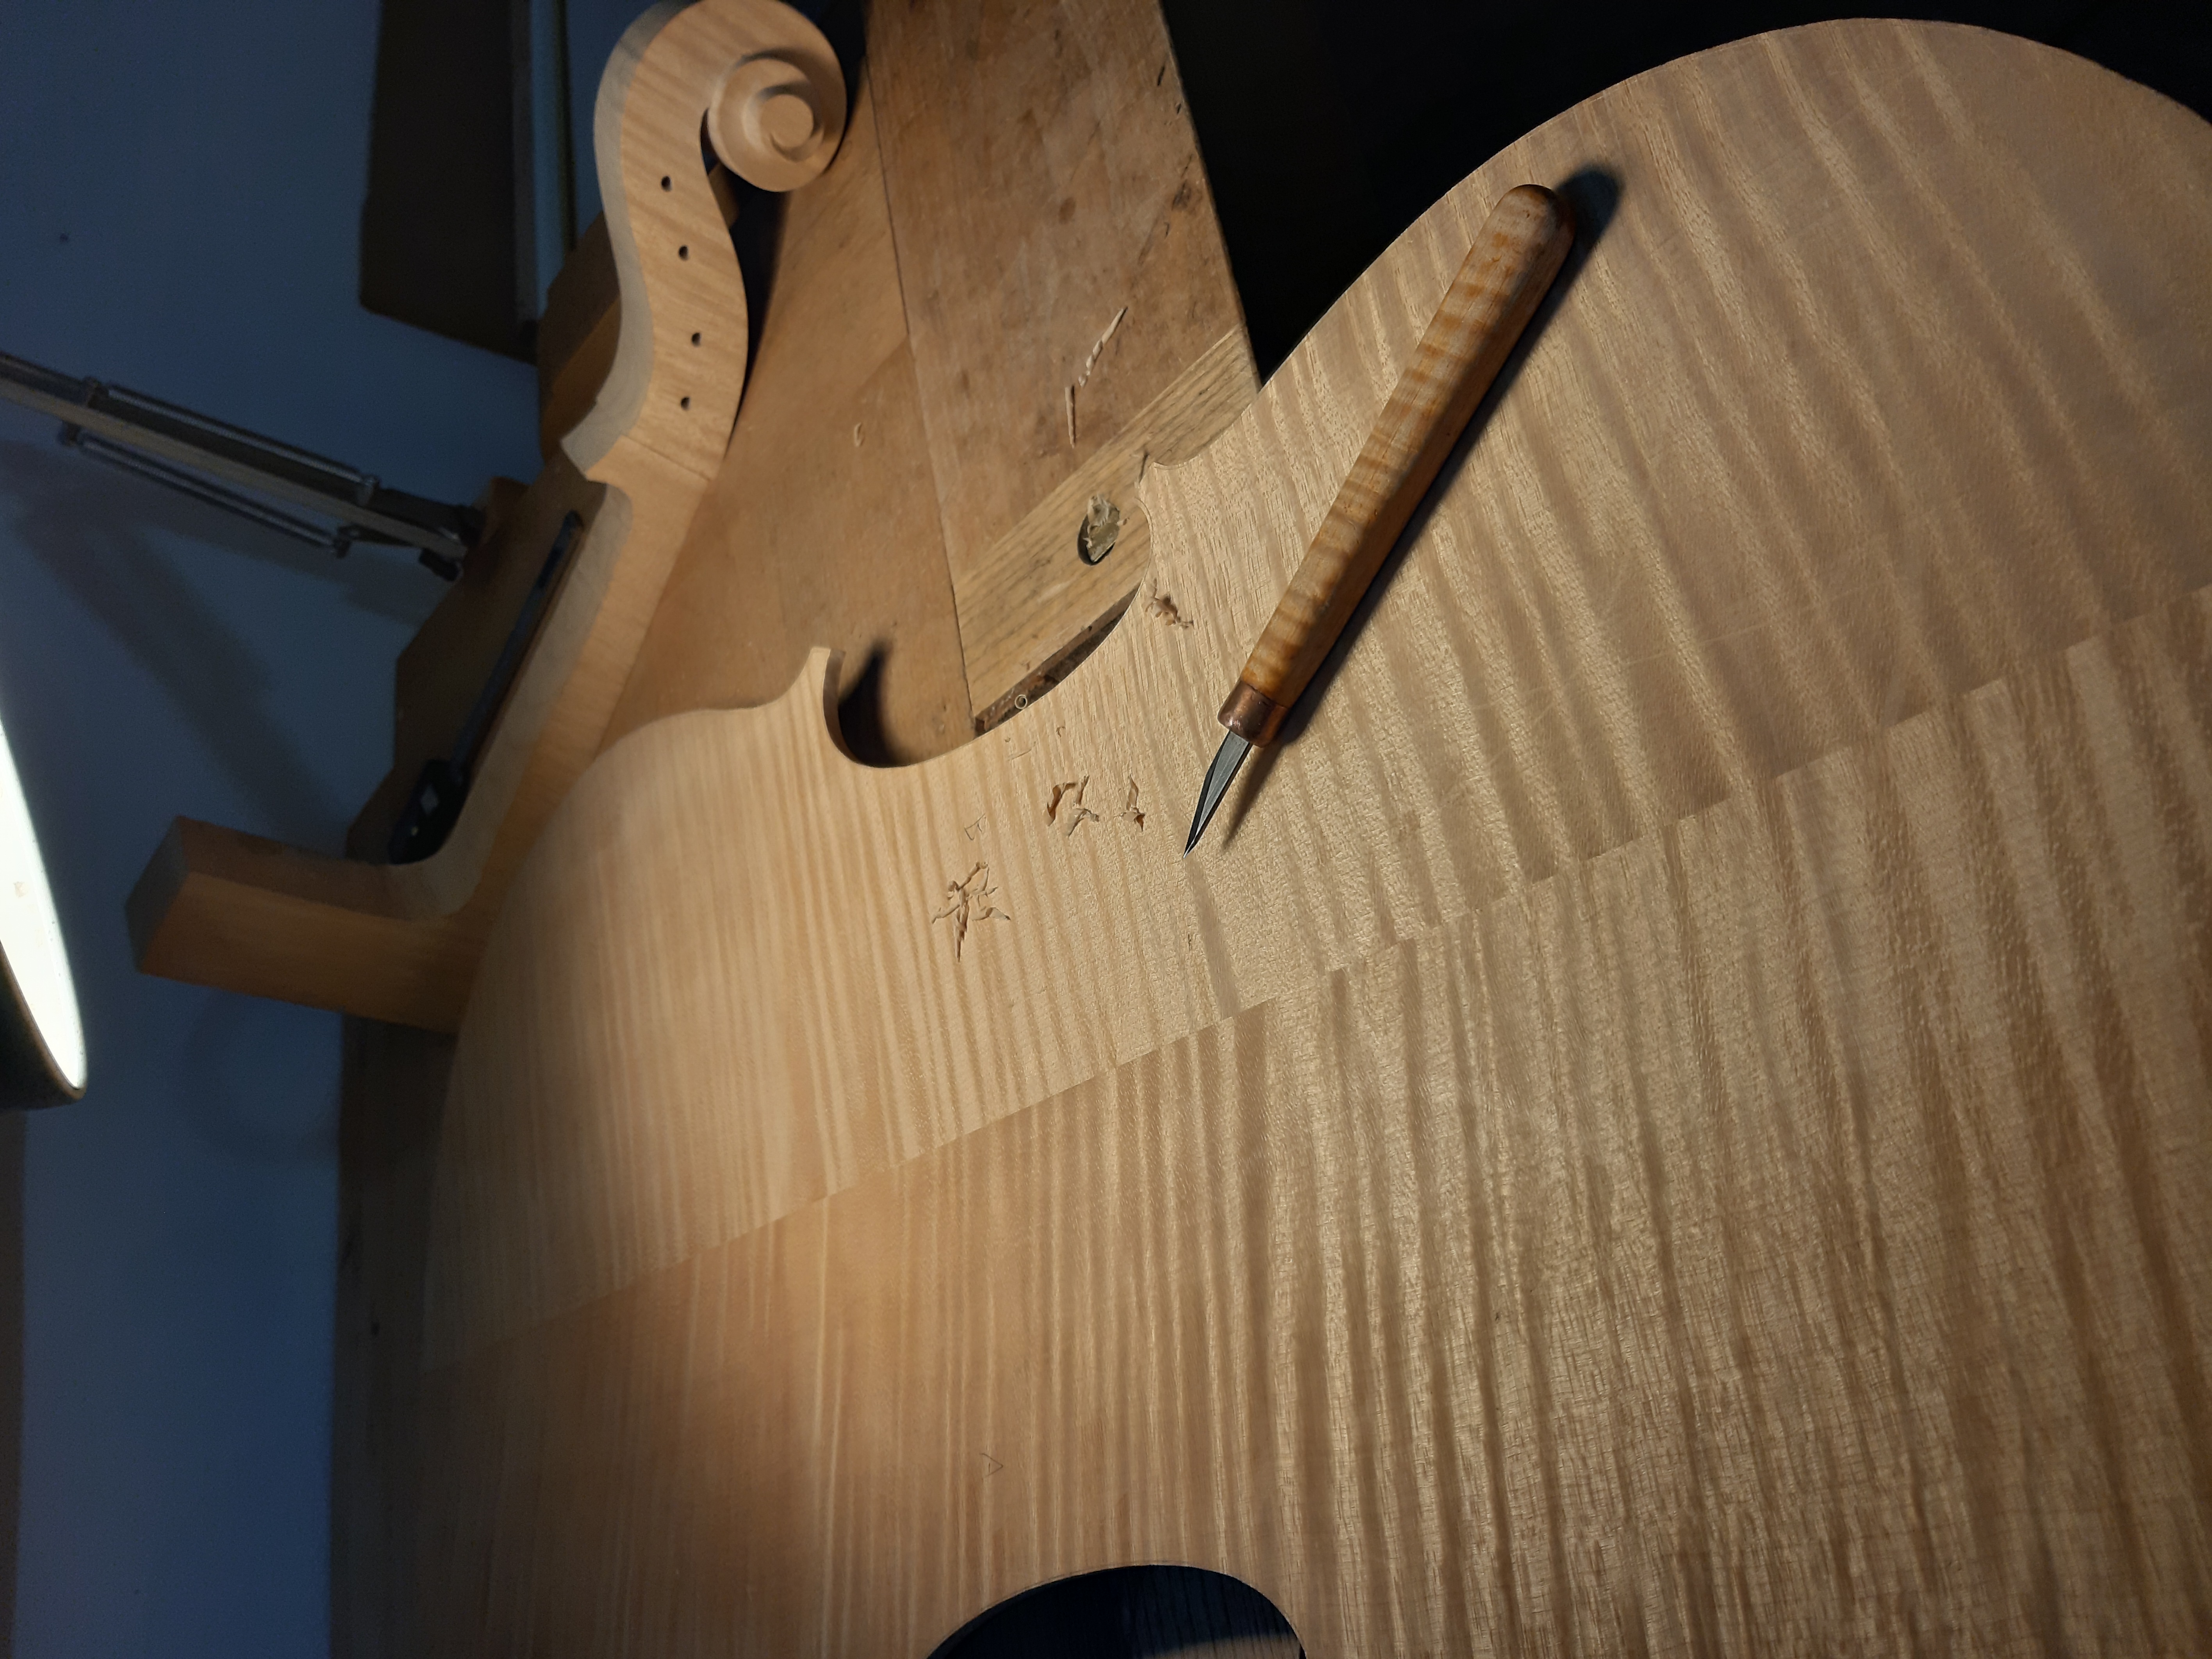 Cello making